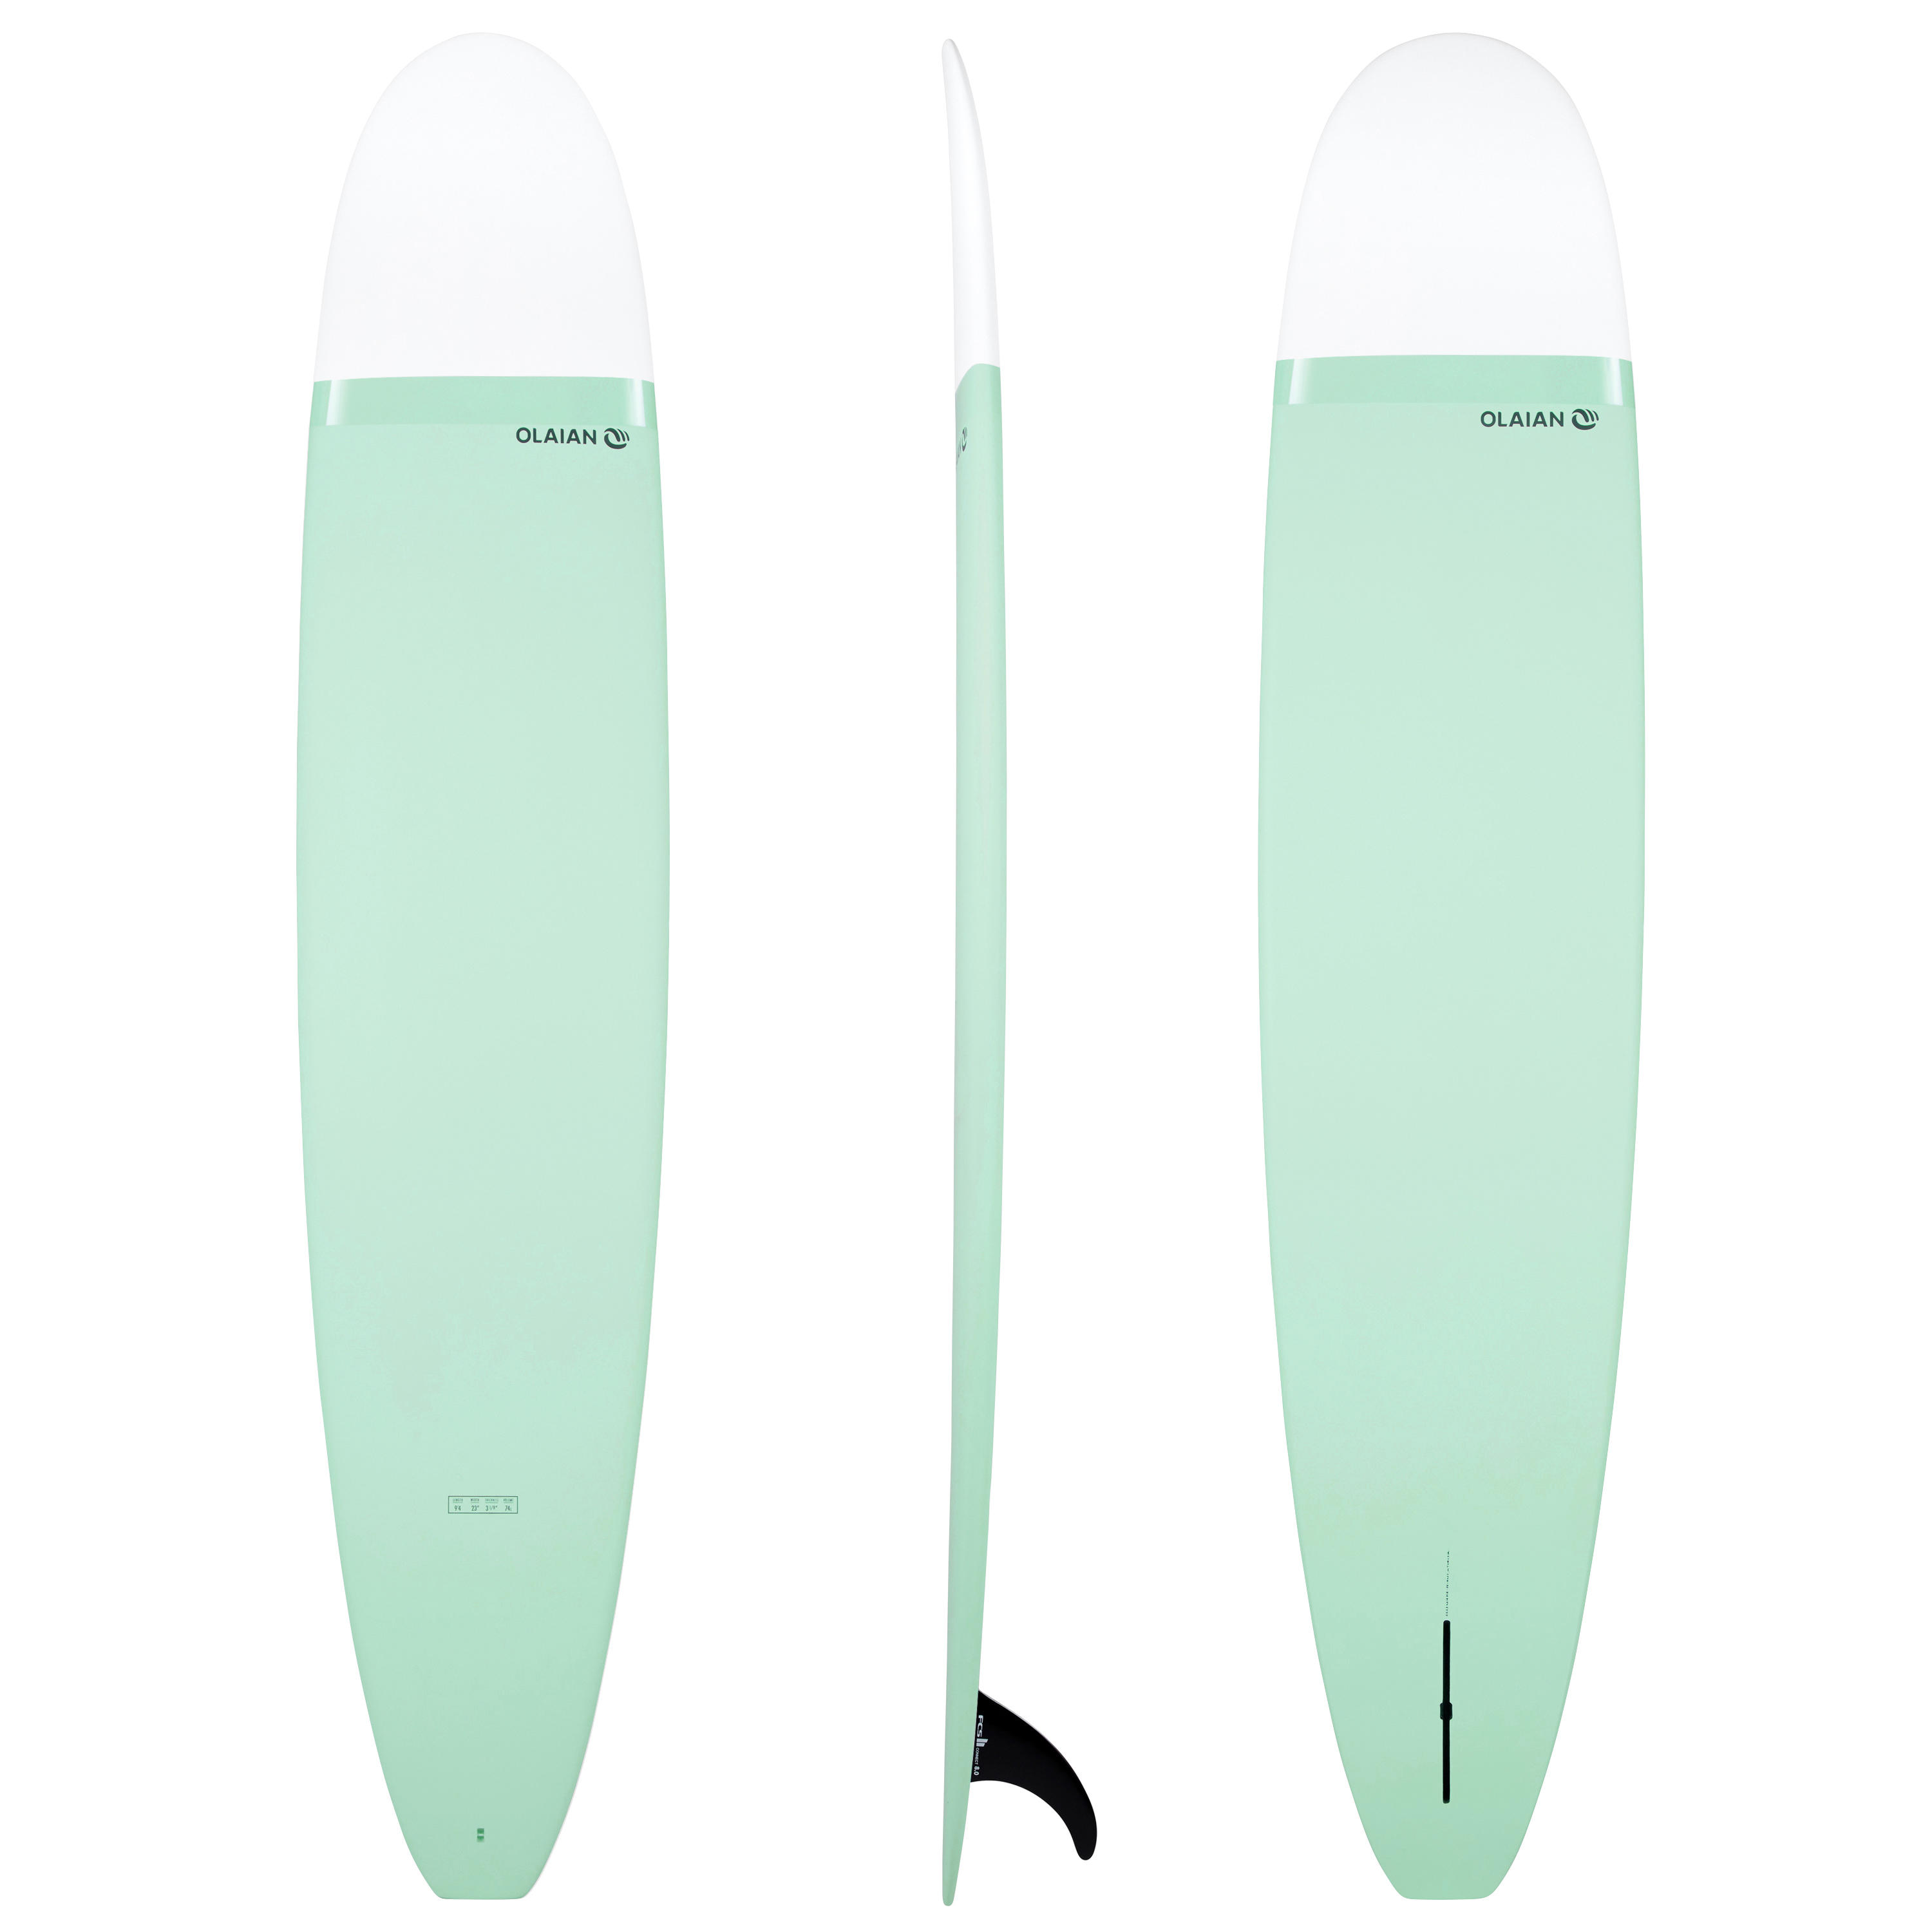 OLAIAN Surfboard Longboard 900 Nose Rider 9'4" inkl. 1 Finne